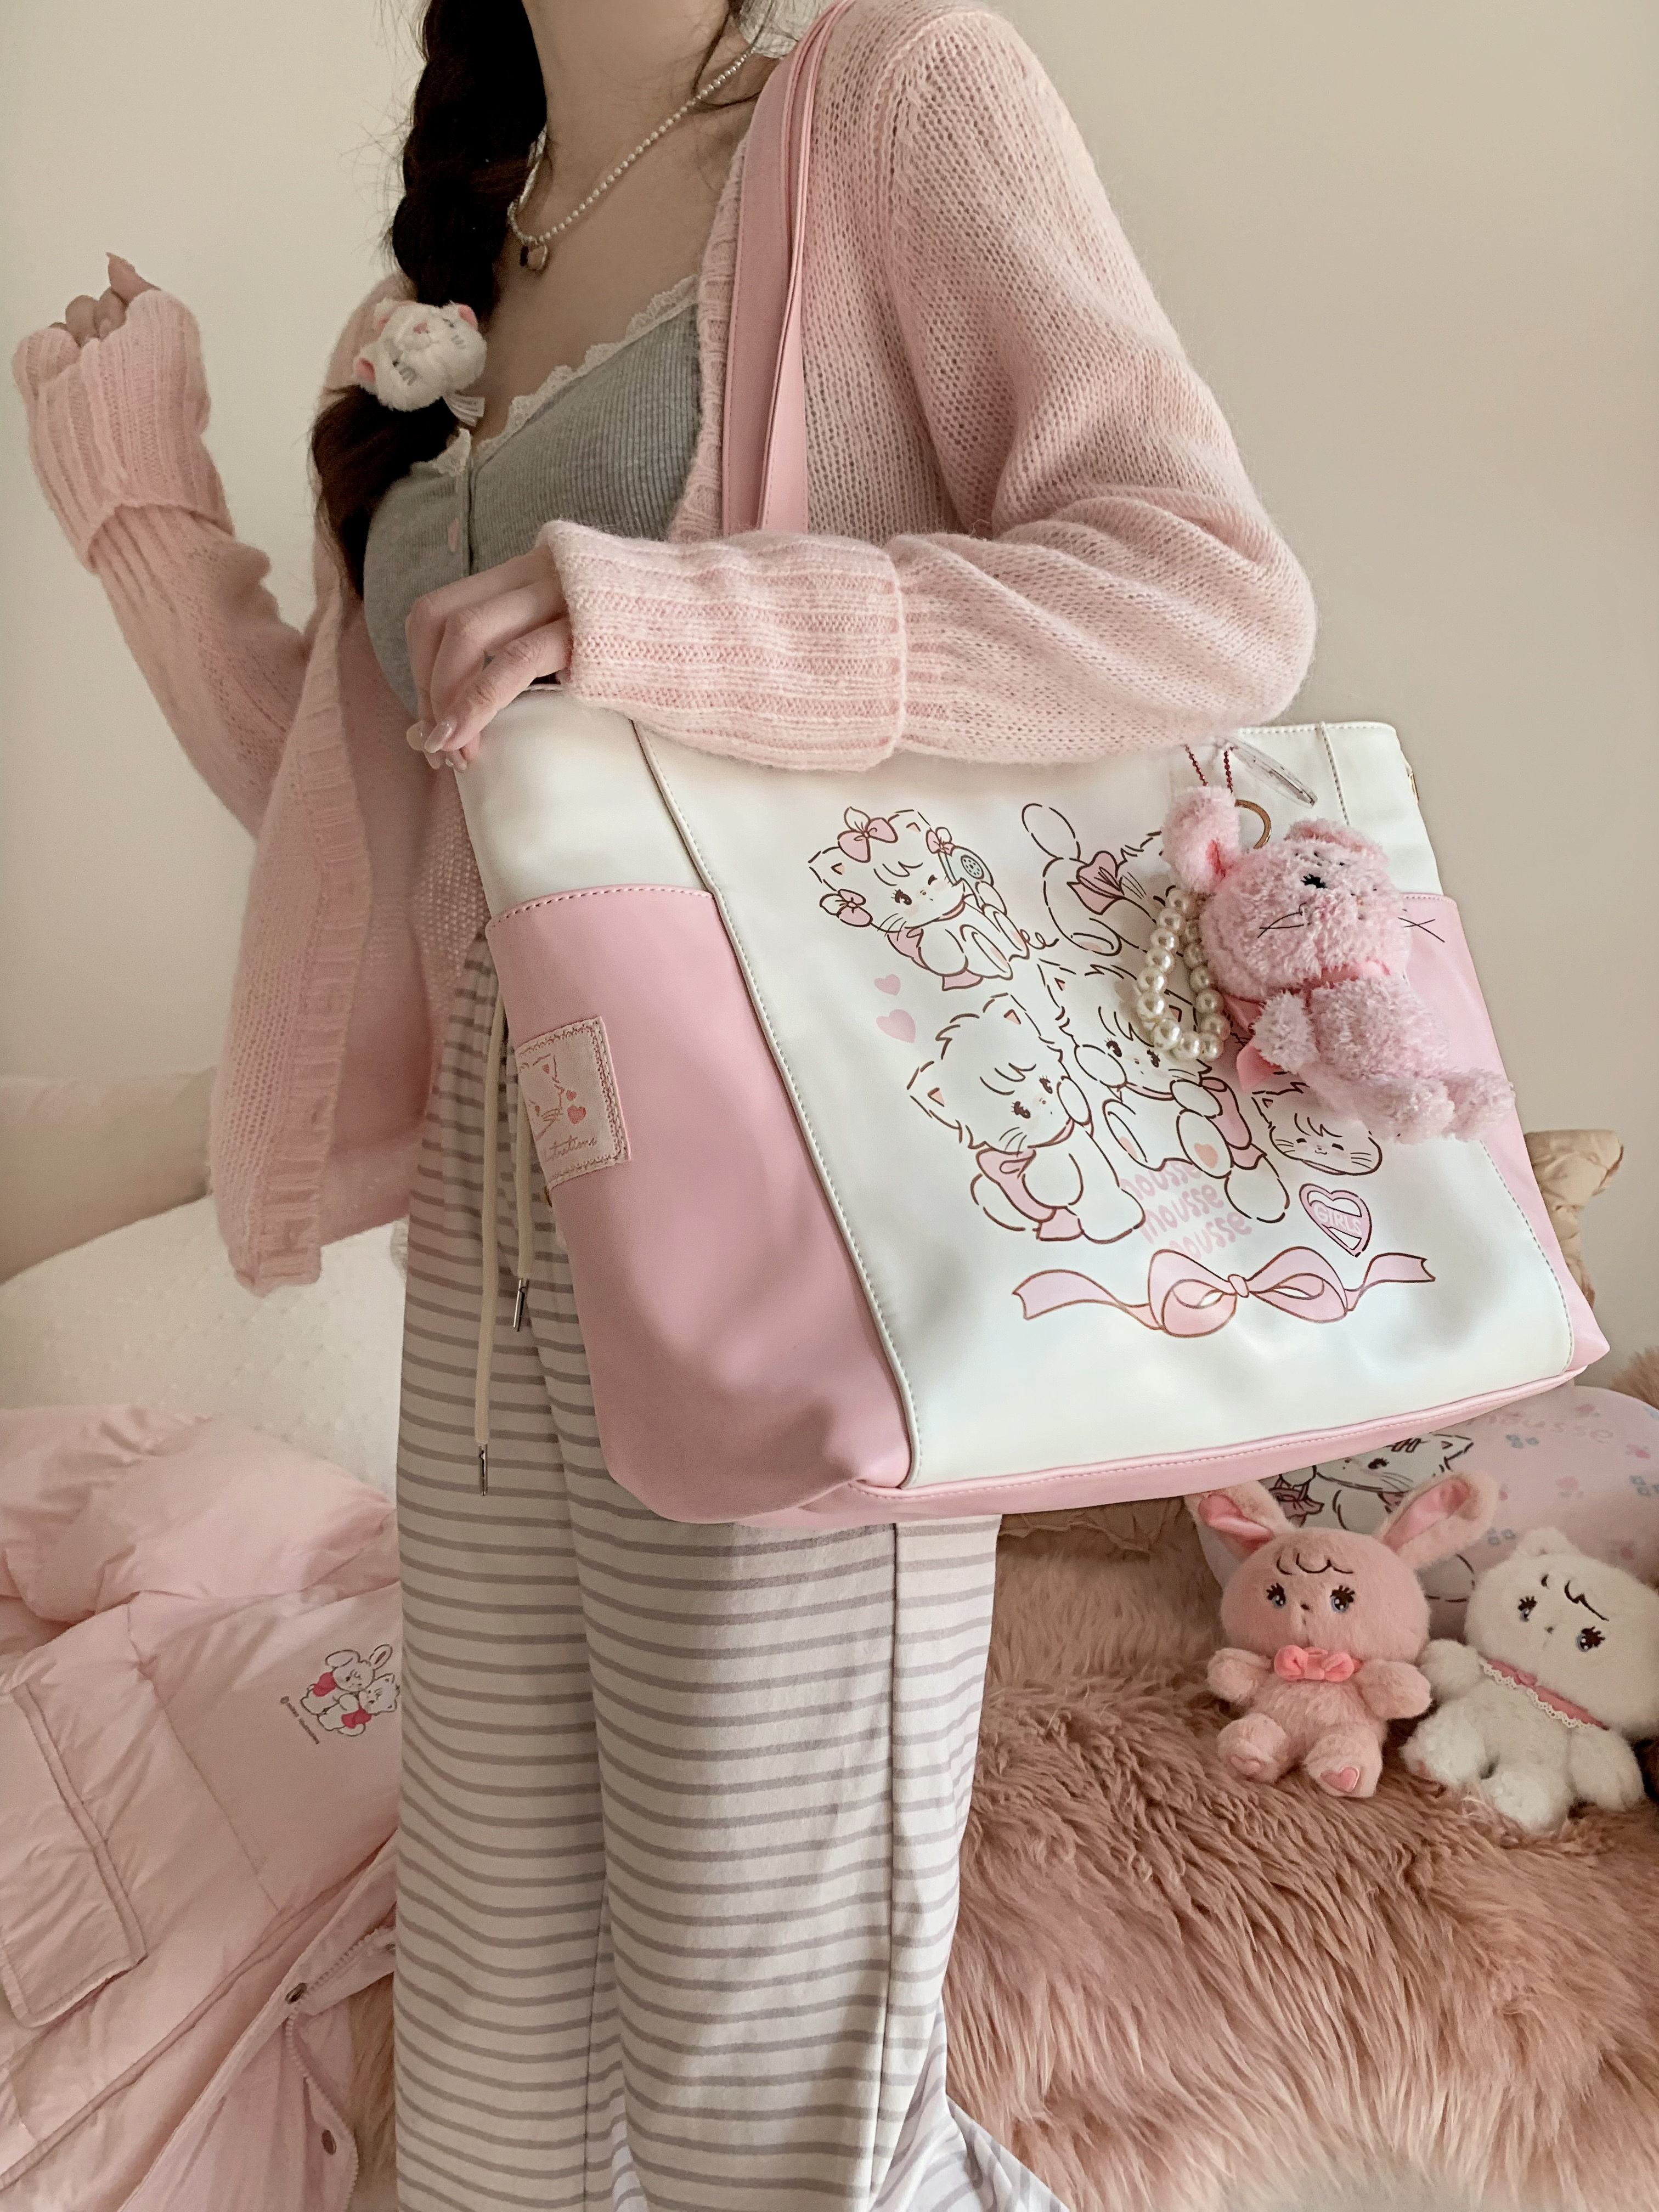 绵羊商店mikko联名大容量拼色托特包手提包单肩通勤可爱粉色大包